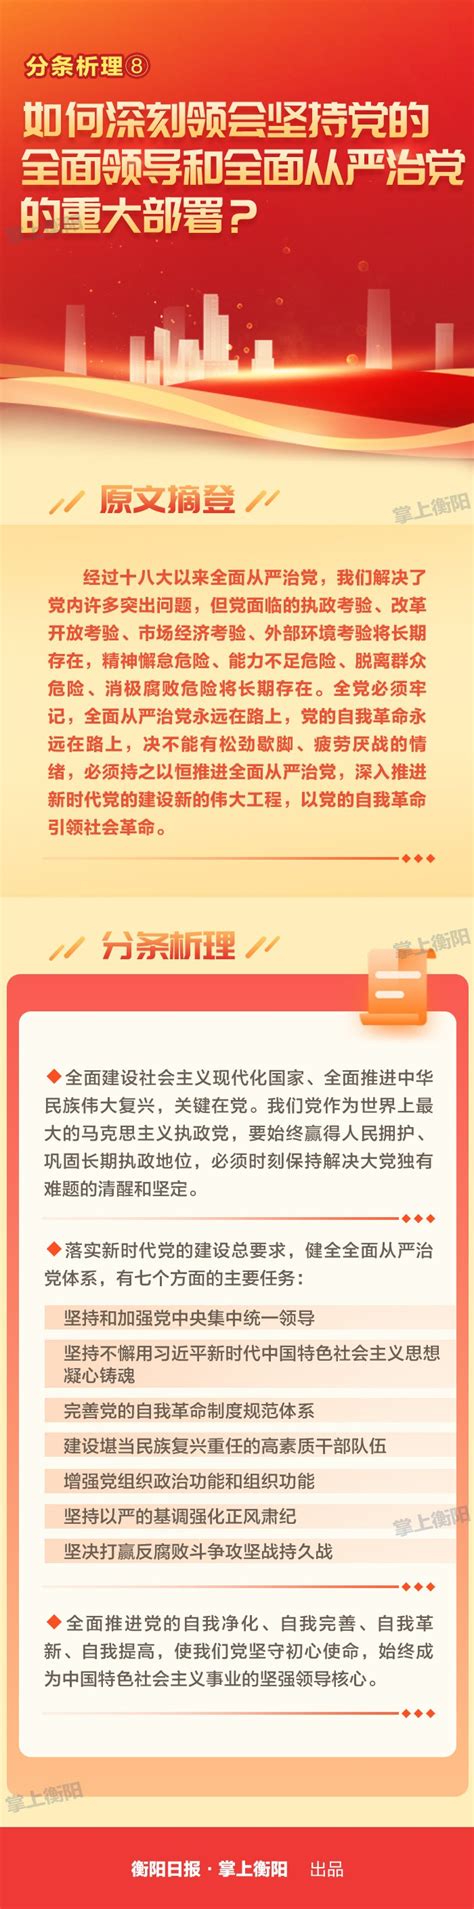 衡阳市人民政府门户网站-分条析理⑧丨如何深刻领会坚持党的全面领导和全面从严治党的重大部署？